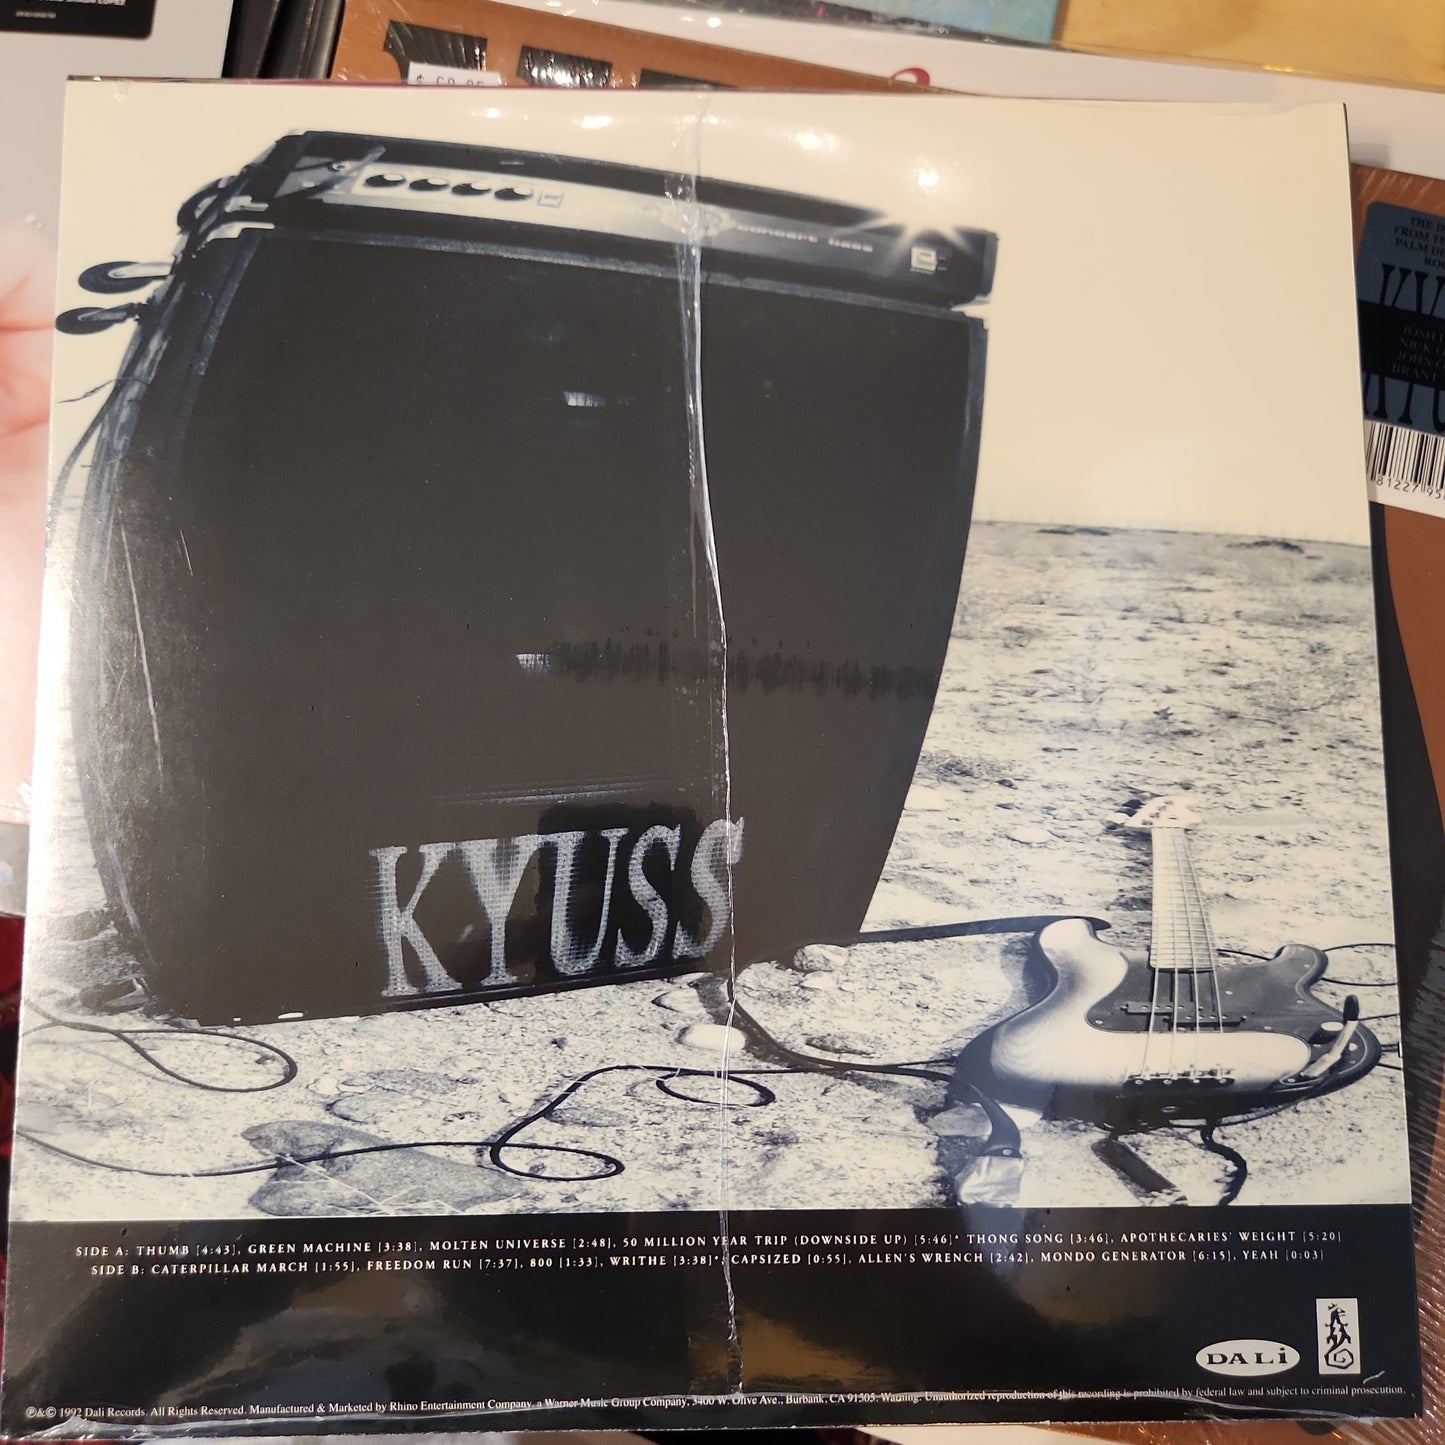 Kyuss - Blues for the Red sun - Vinyl LP